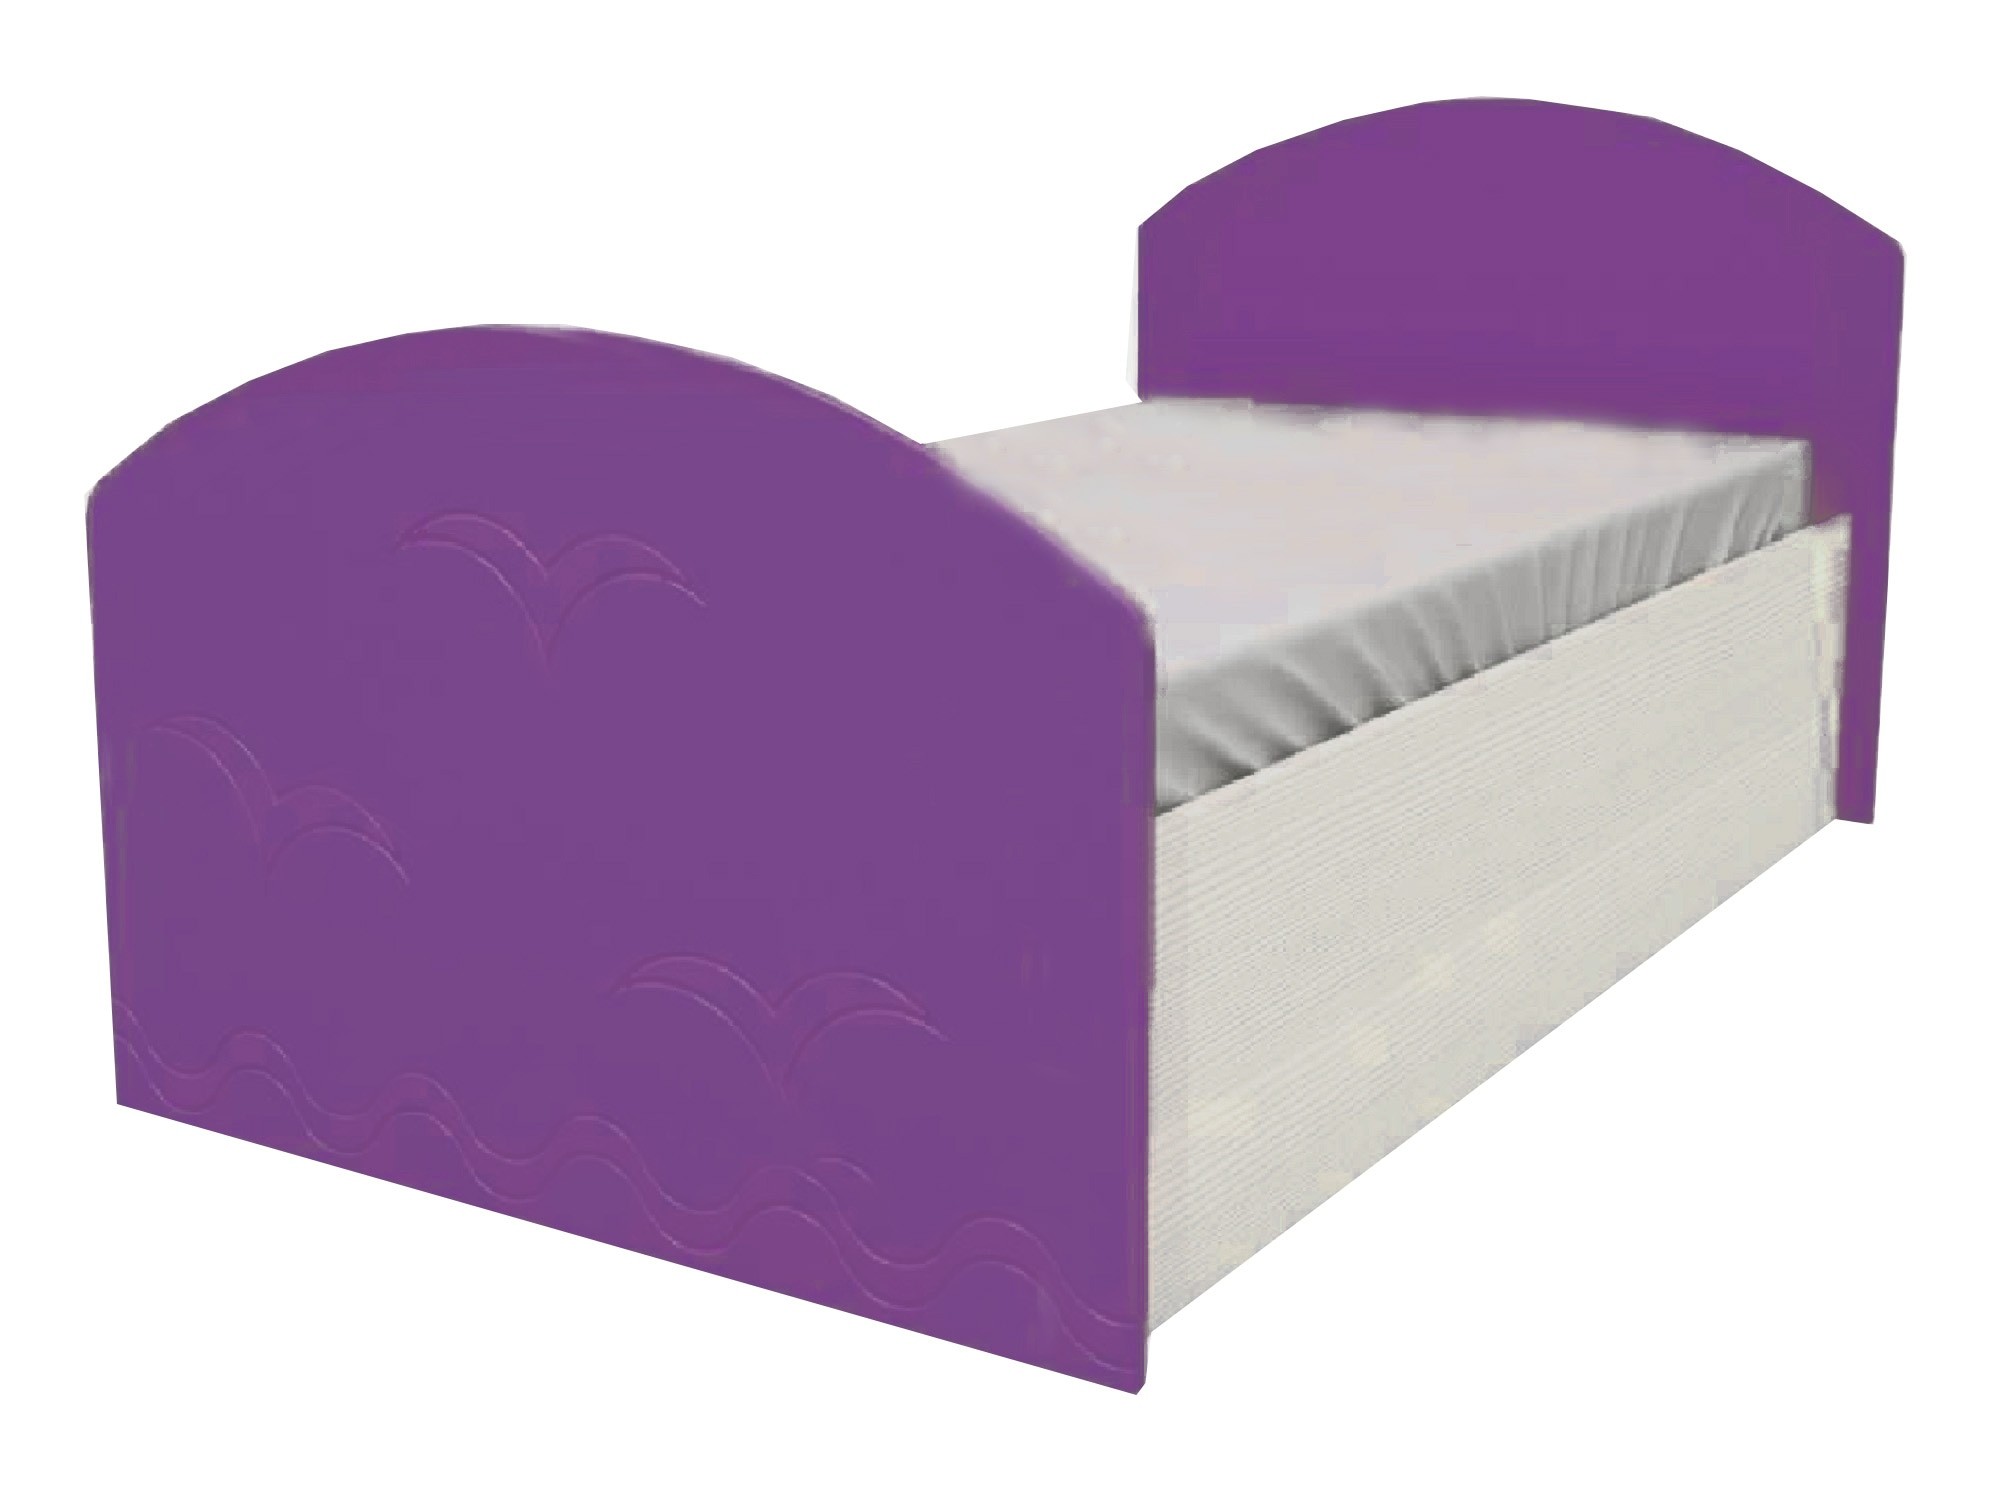 Юниор-2 Детская кровать 80, металлик (Фиолетовый металлик, Дуб белёный) Фиолетовый металлик, МДФ, ЛДСП юниор 2 комод металлик фиолетовый металлик дуб белёный фиолетовый металлик мдф лдсп